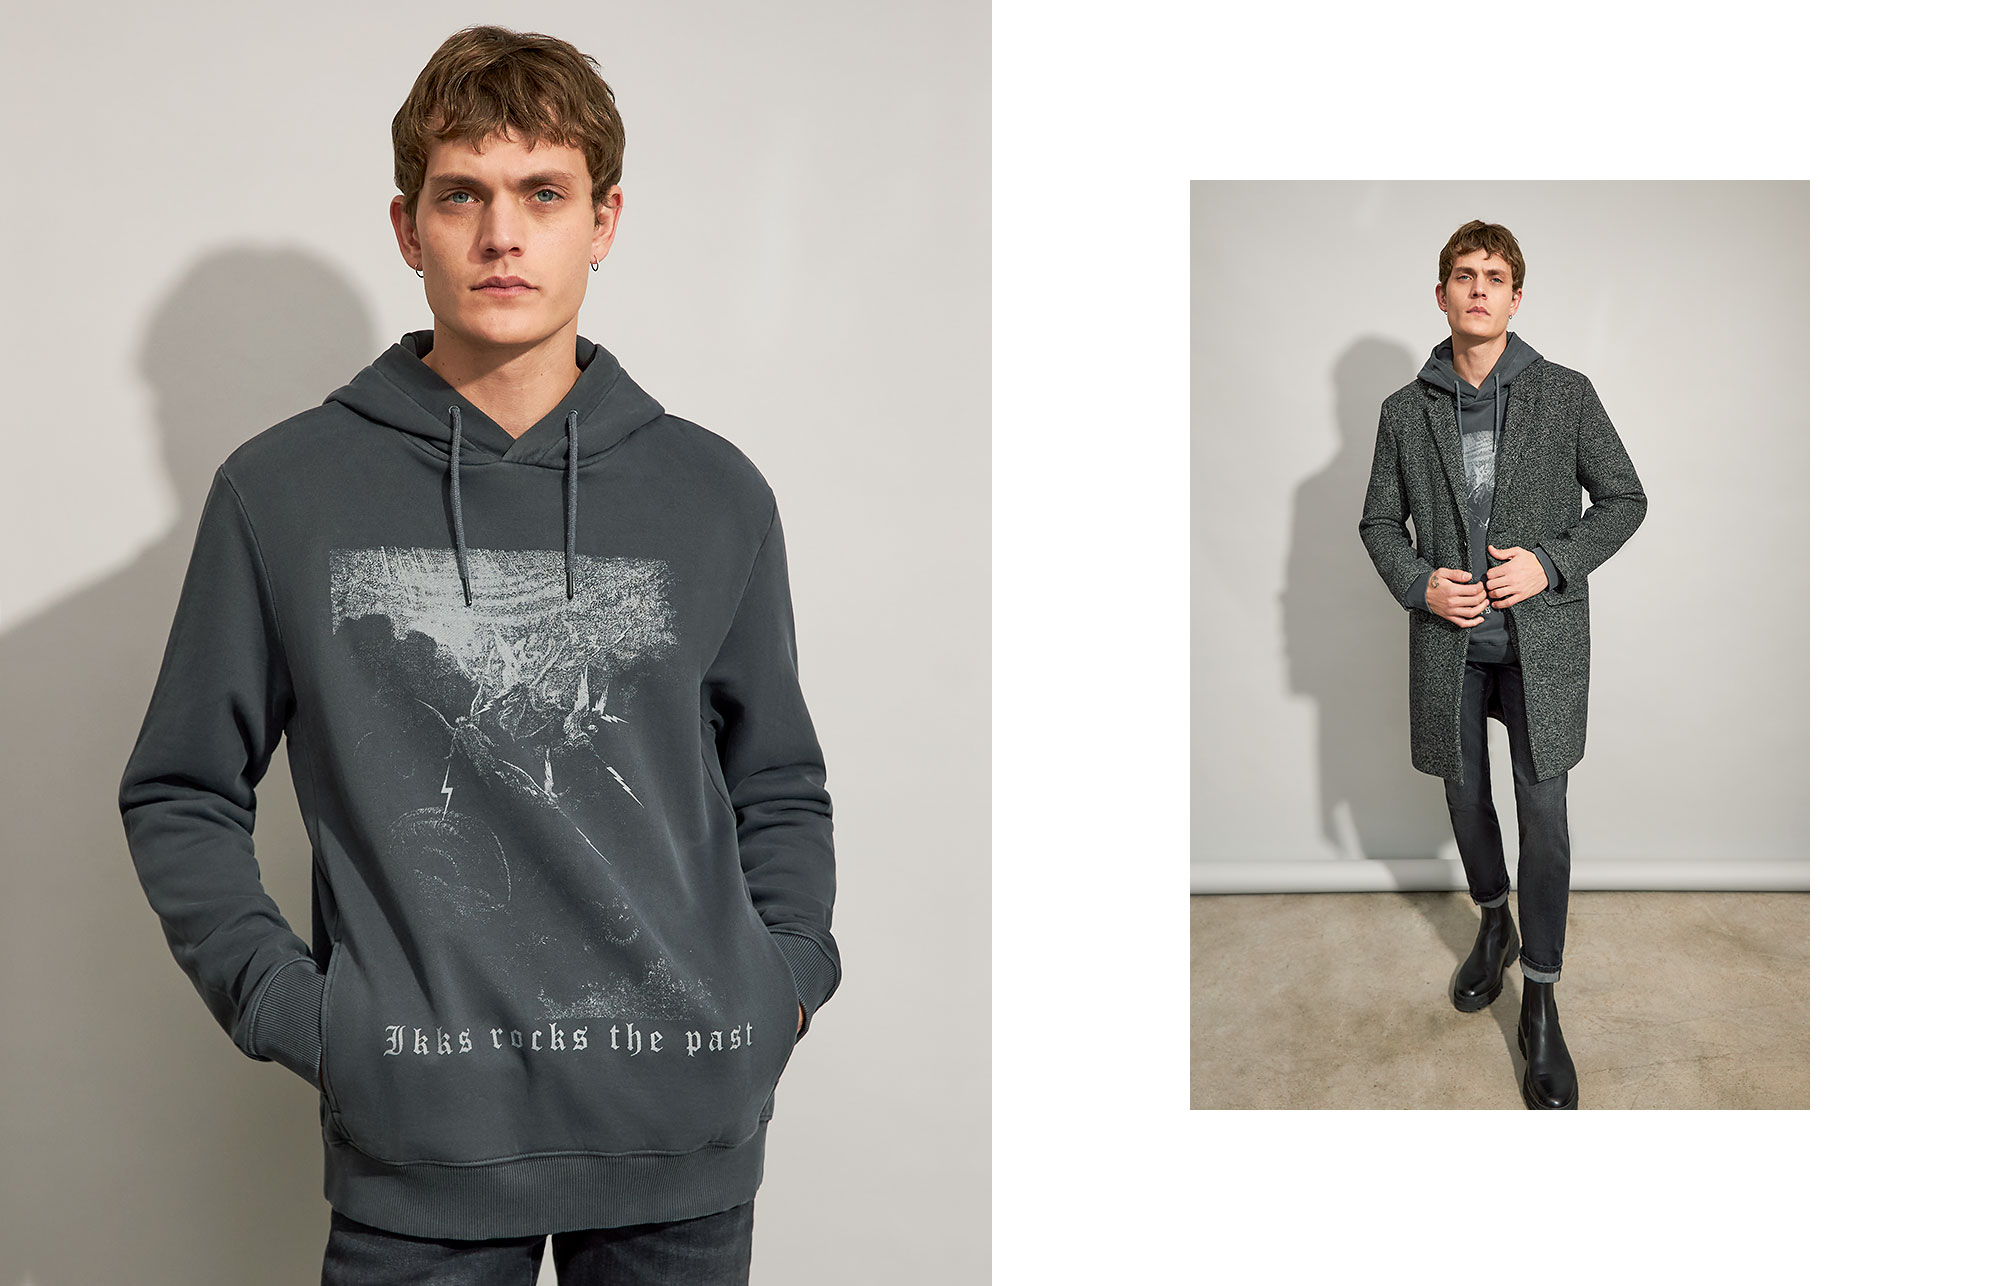 Men’s black rock engraving image hoodie